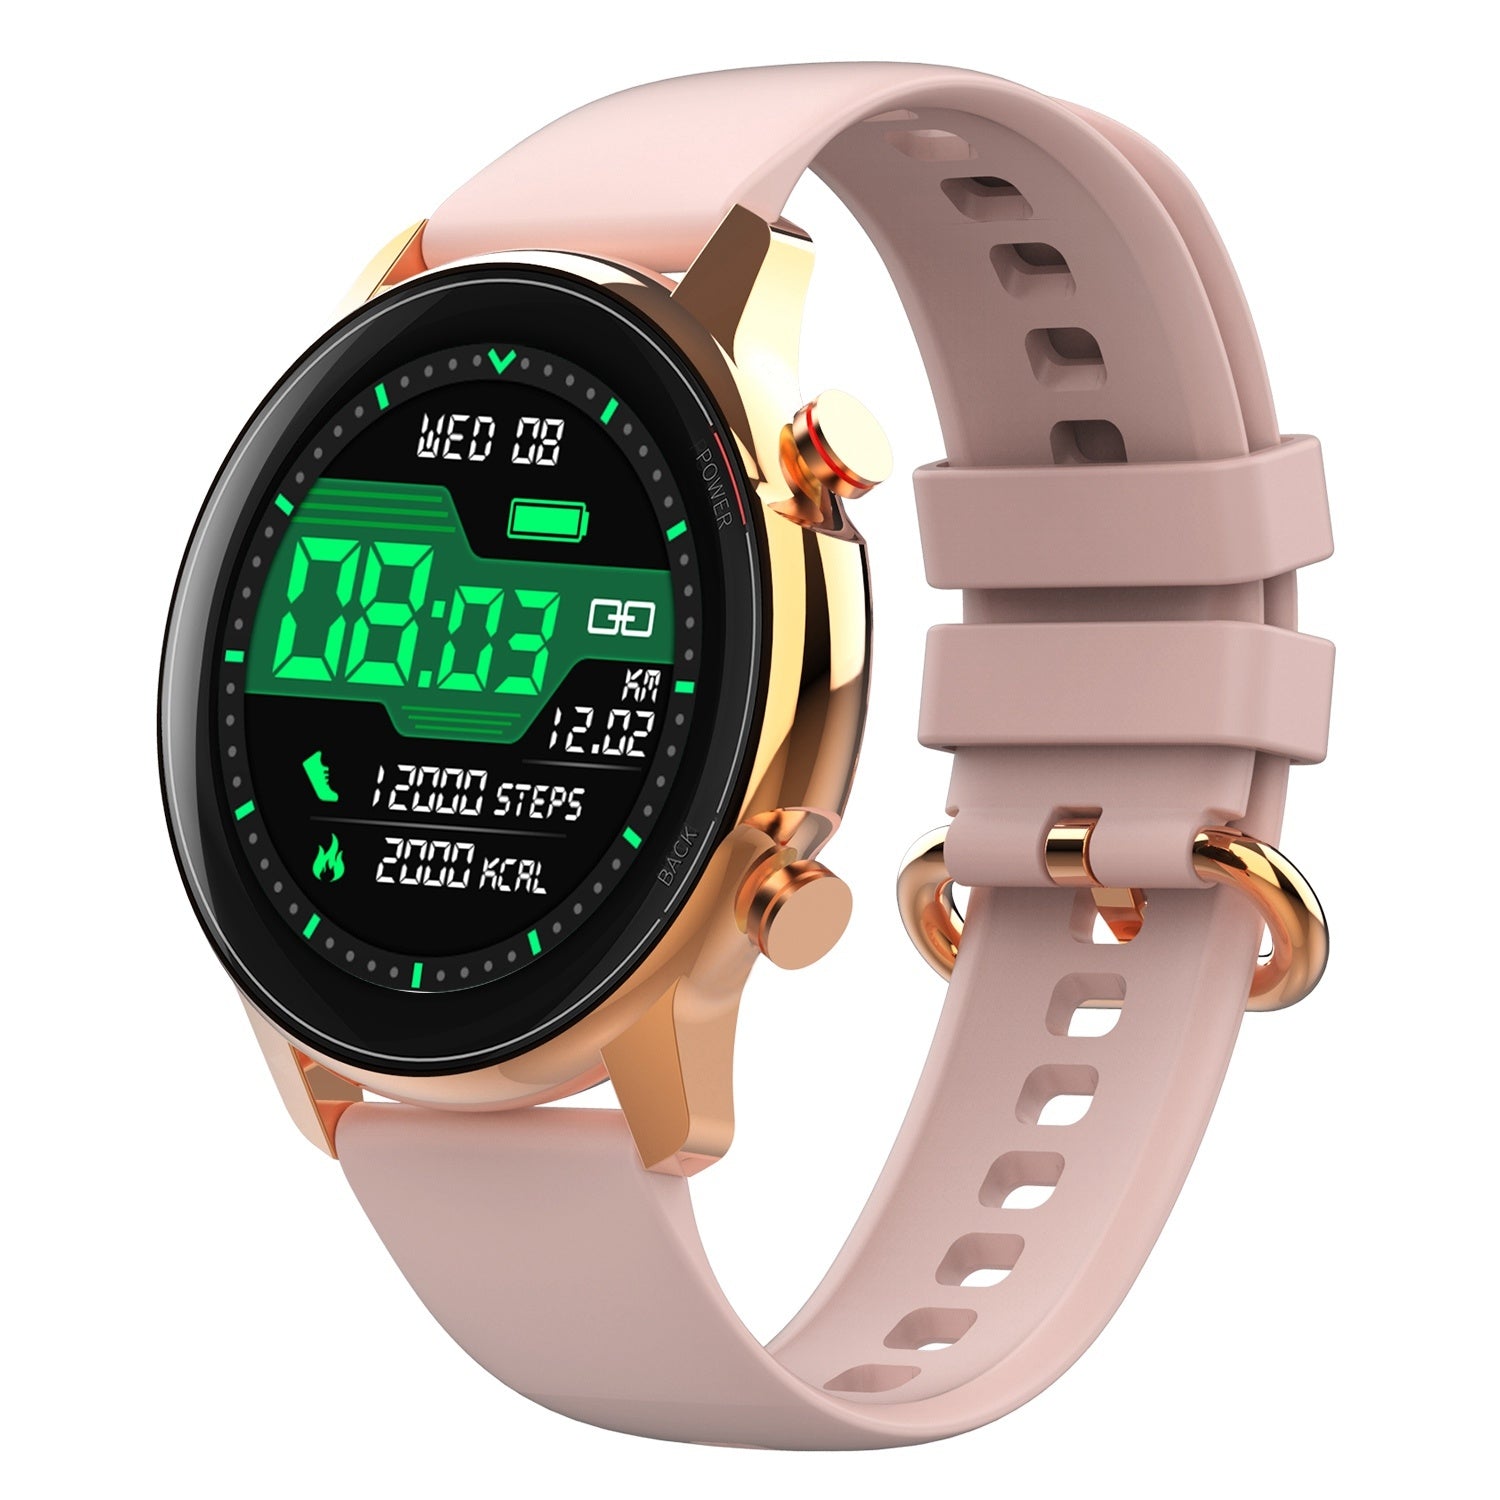 Wireless Smart Watch Fitness Tracker for Men Women 1.32in IP68 Waterproof Full Touch Sport Bracelet Wrist Watch with Heart Rate Blood Pressure Sleep Monitor Pedometer